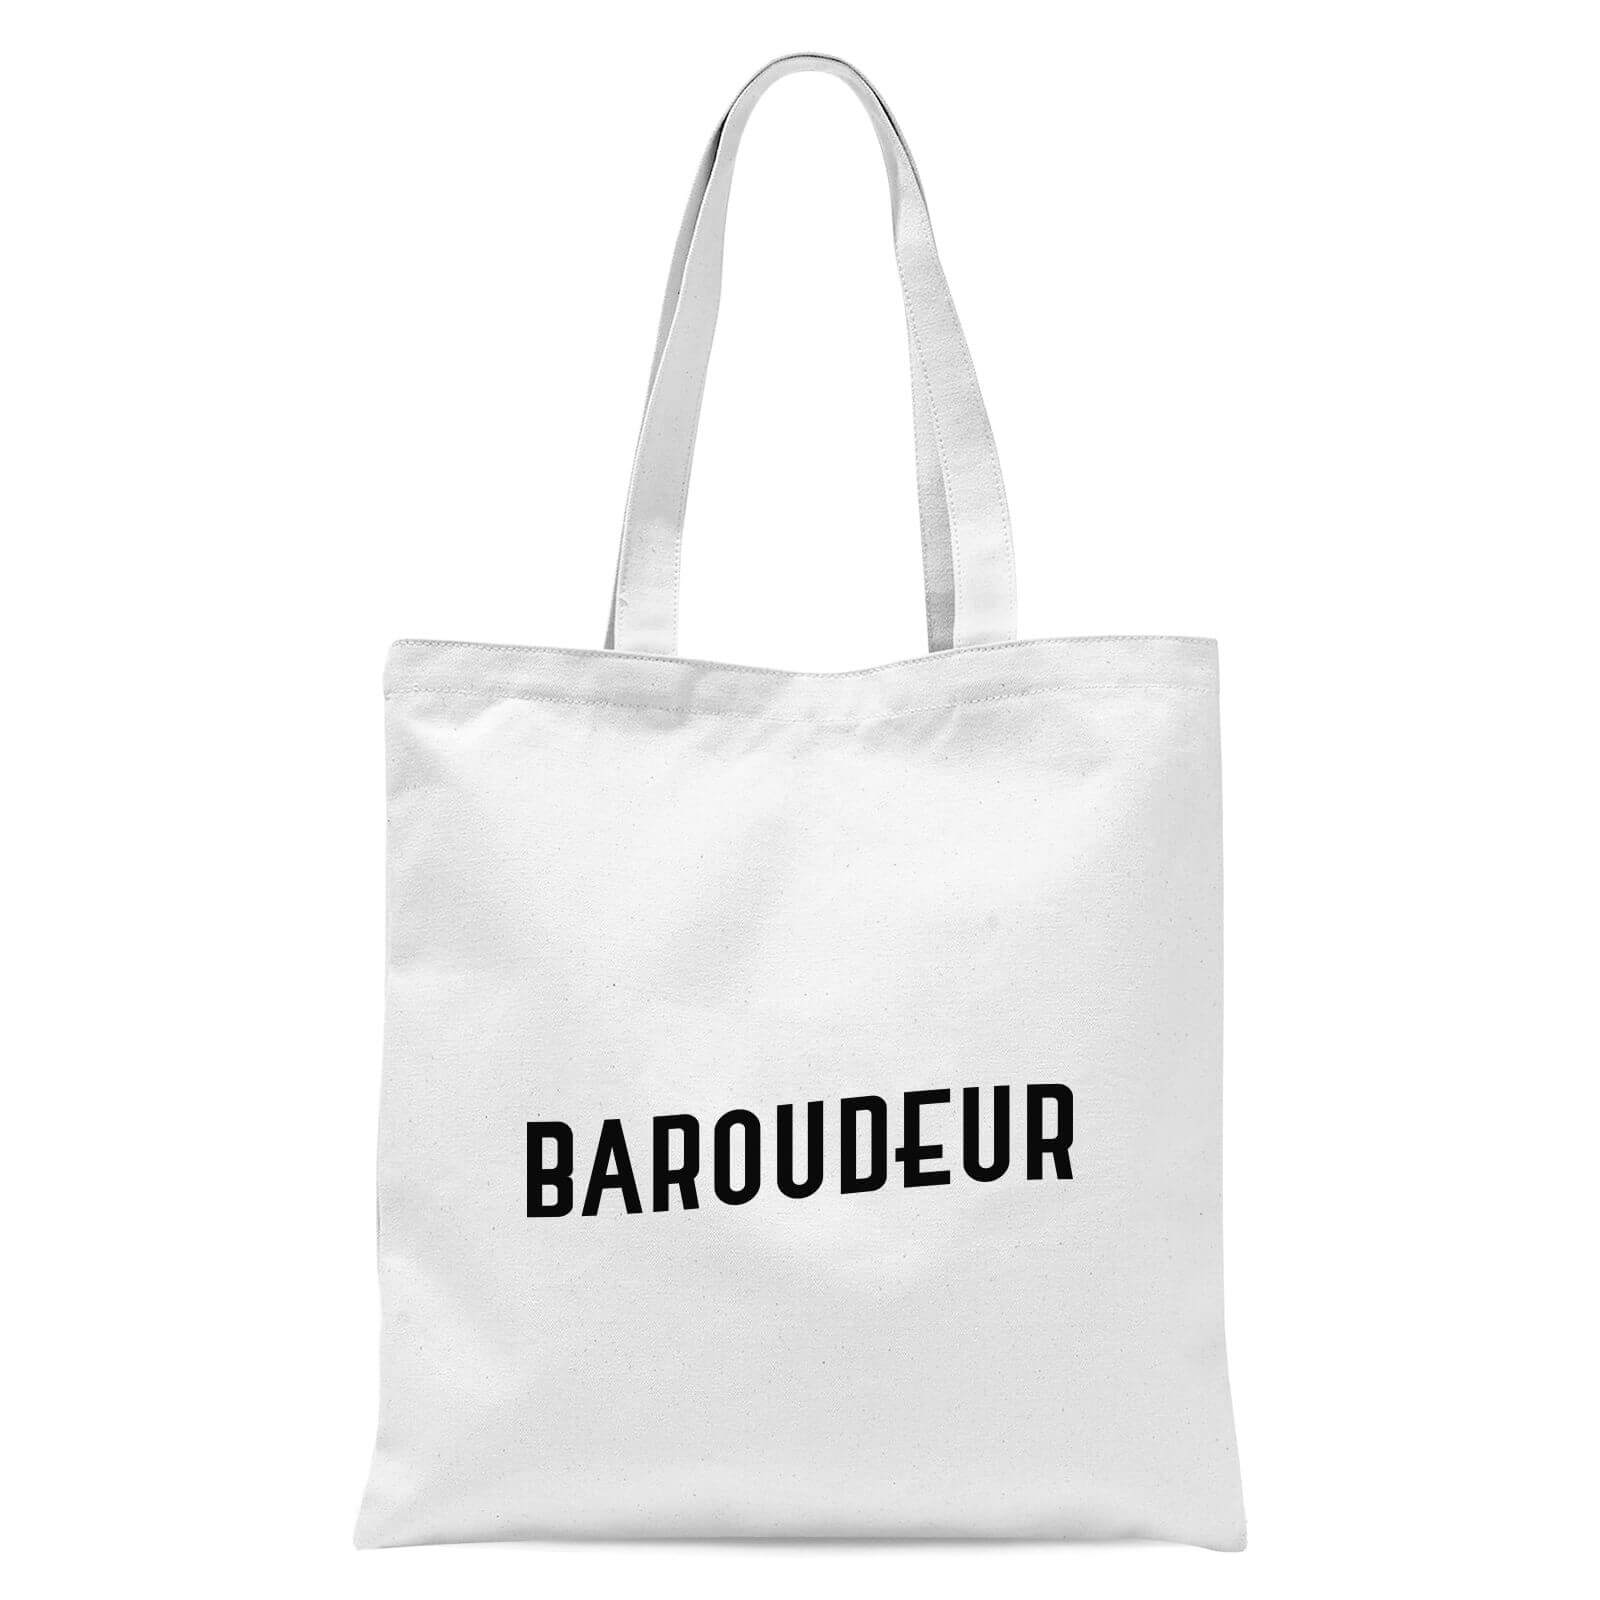 Baroudeur Tote Bag - White